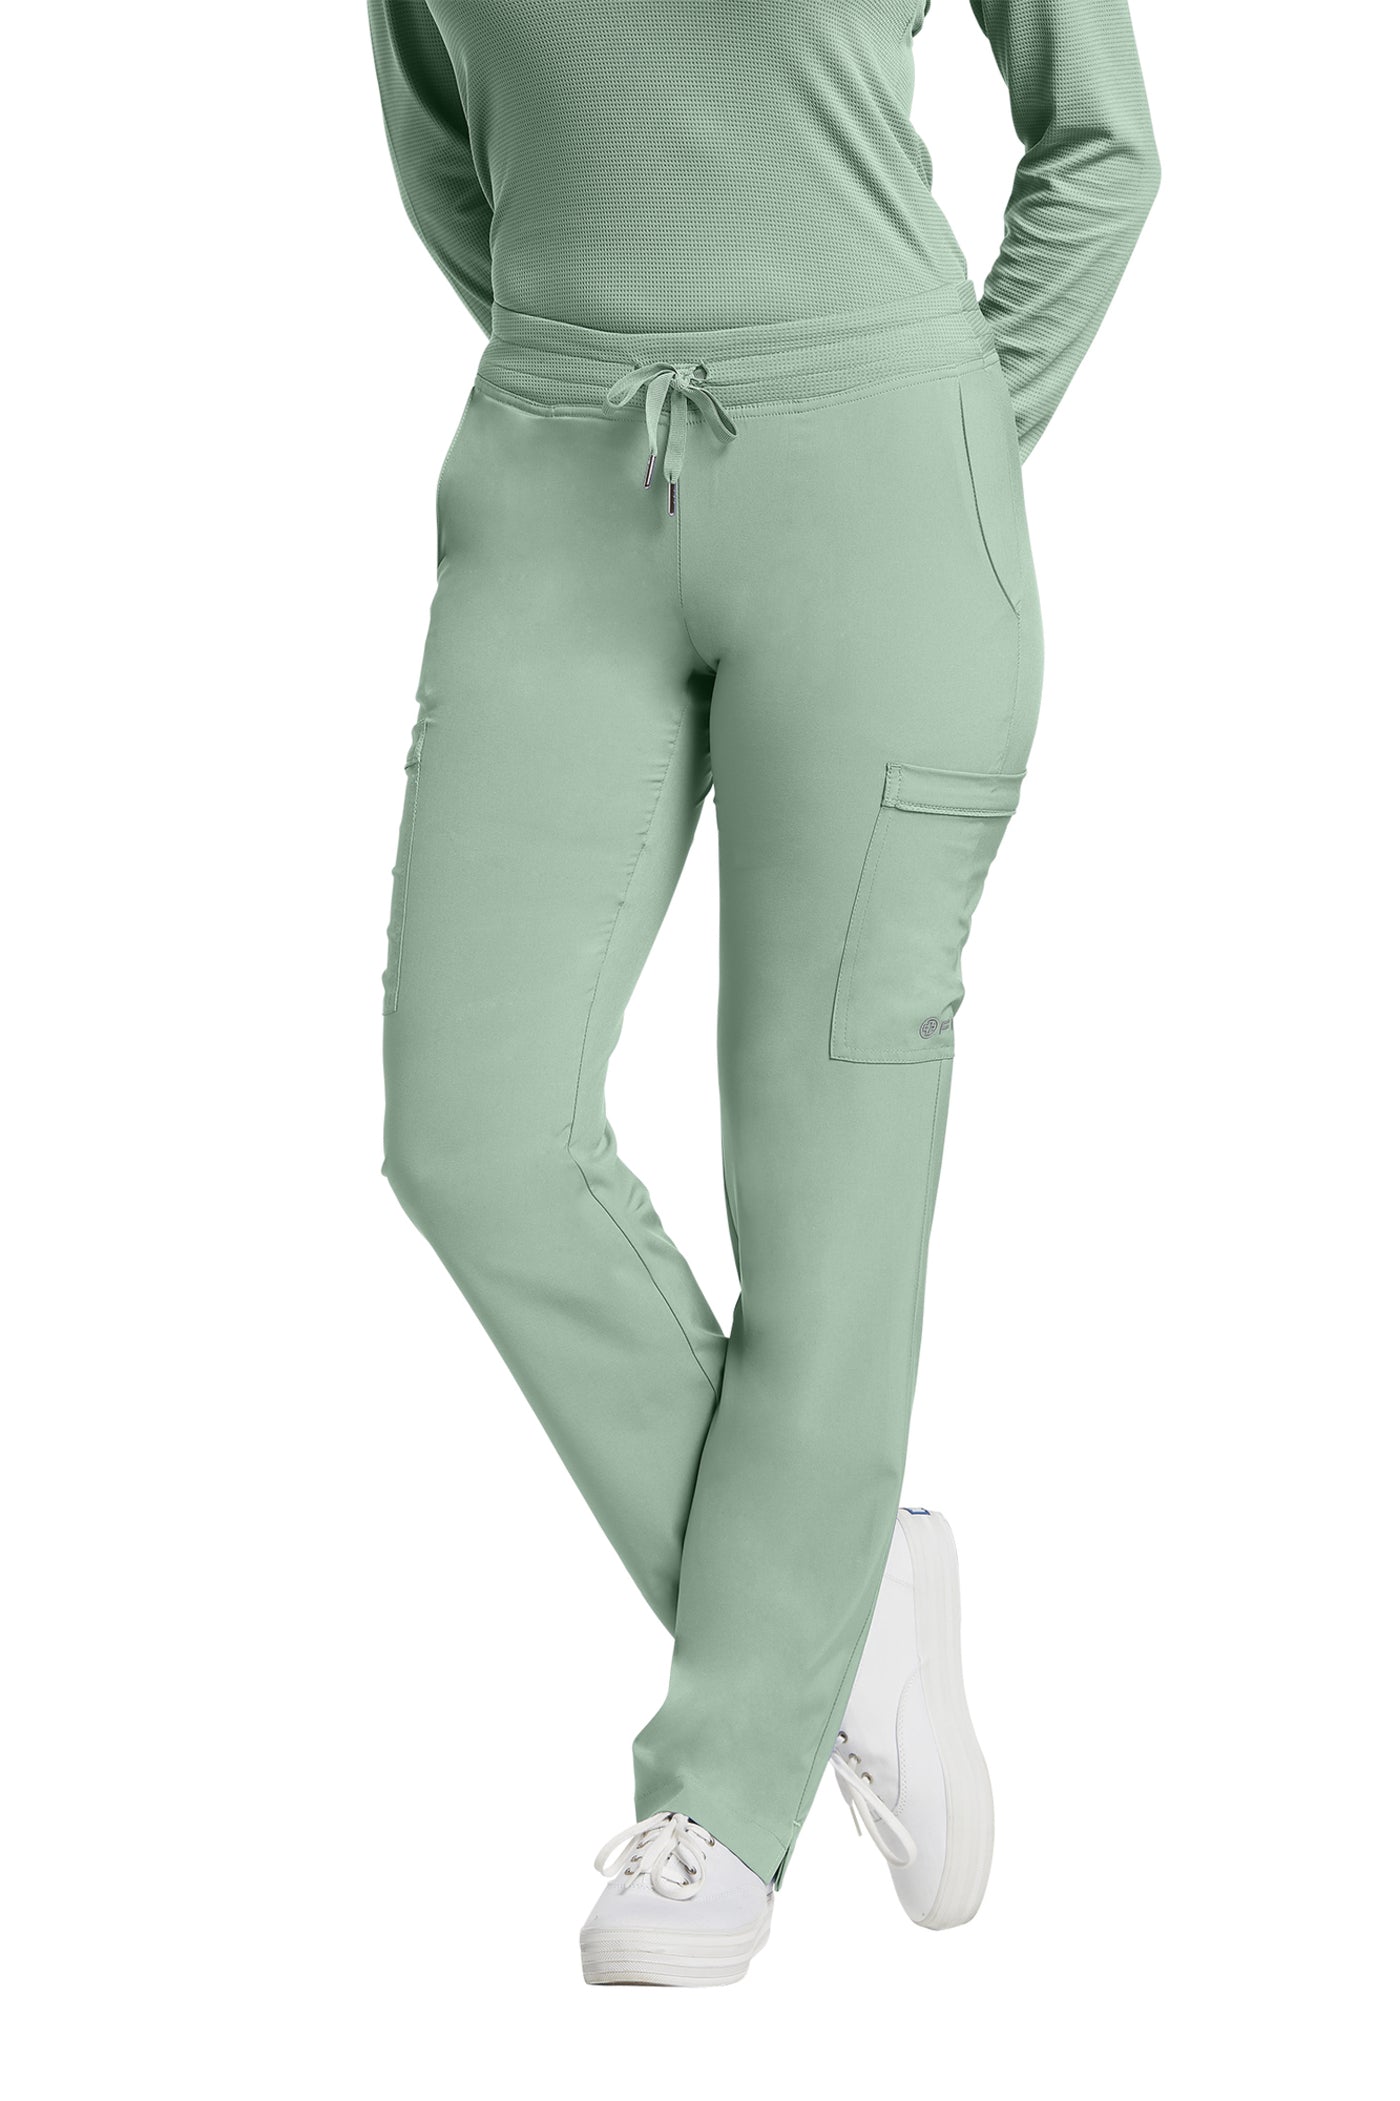 Pantalon de travail pour femme White Cross FIT #373 vert minéral